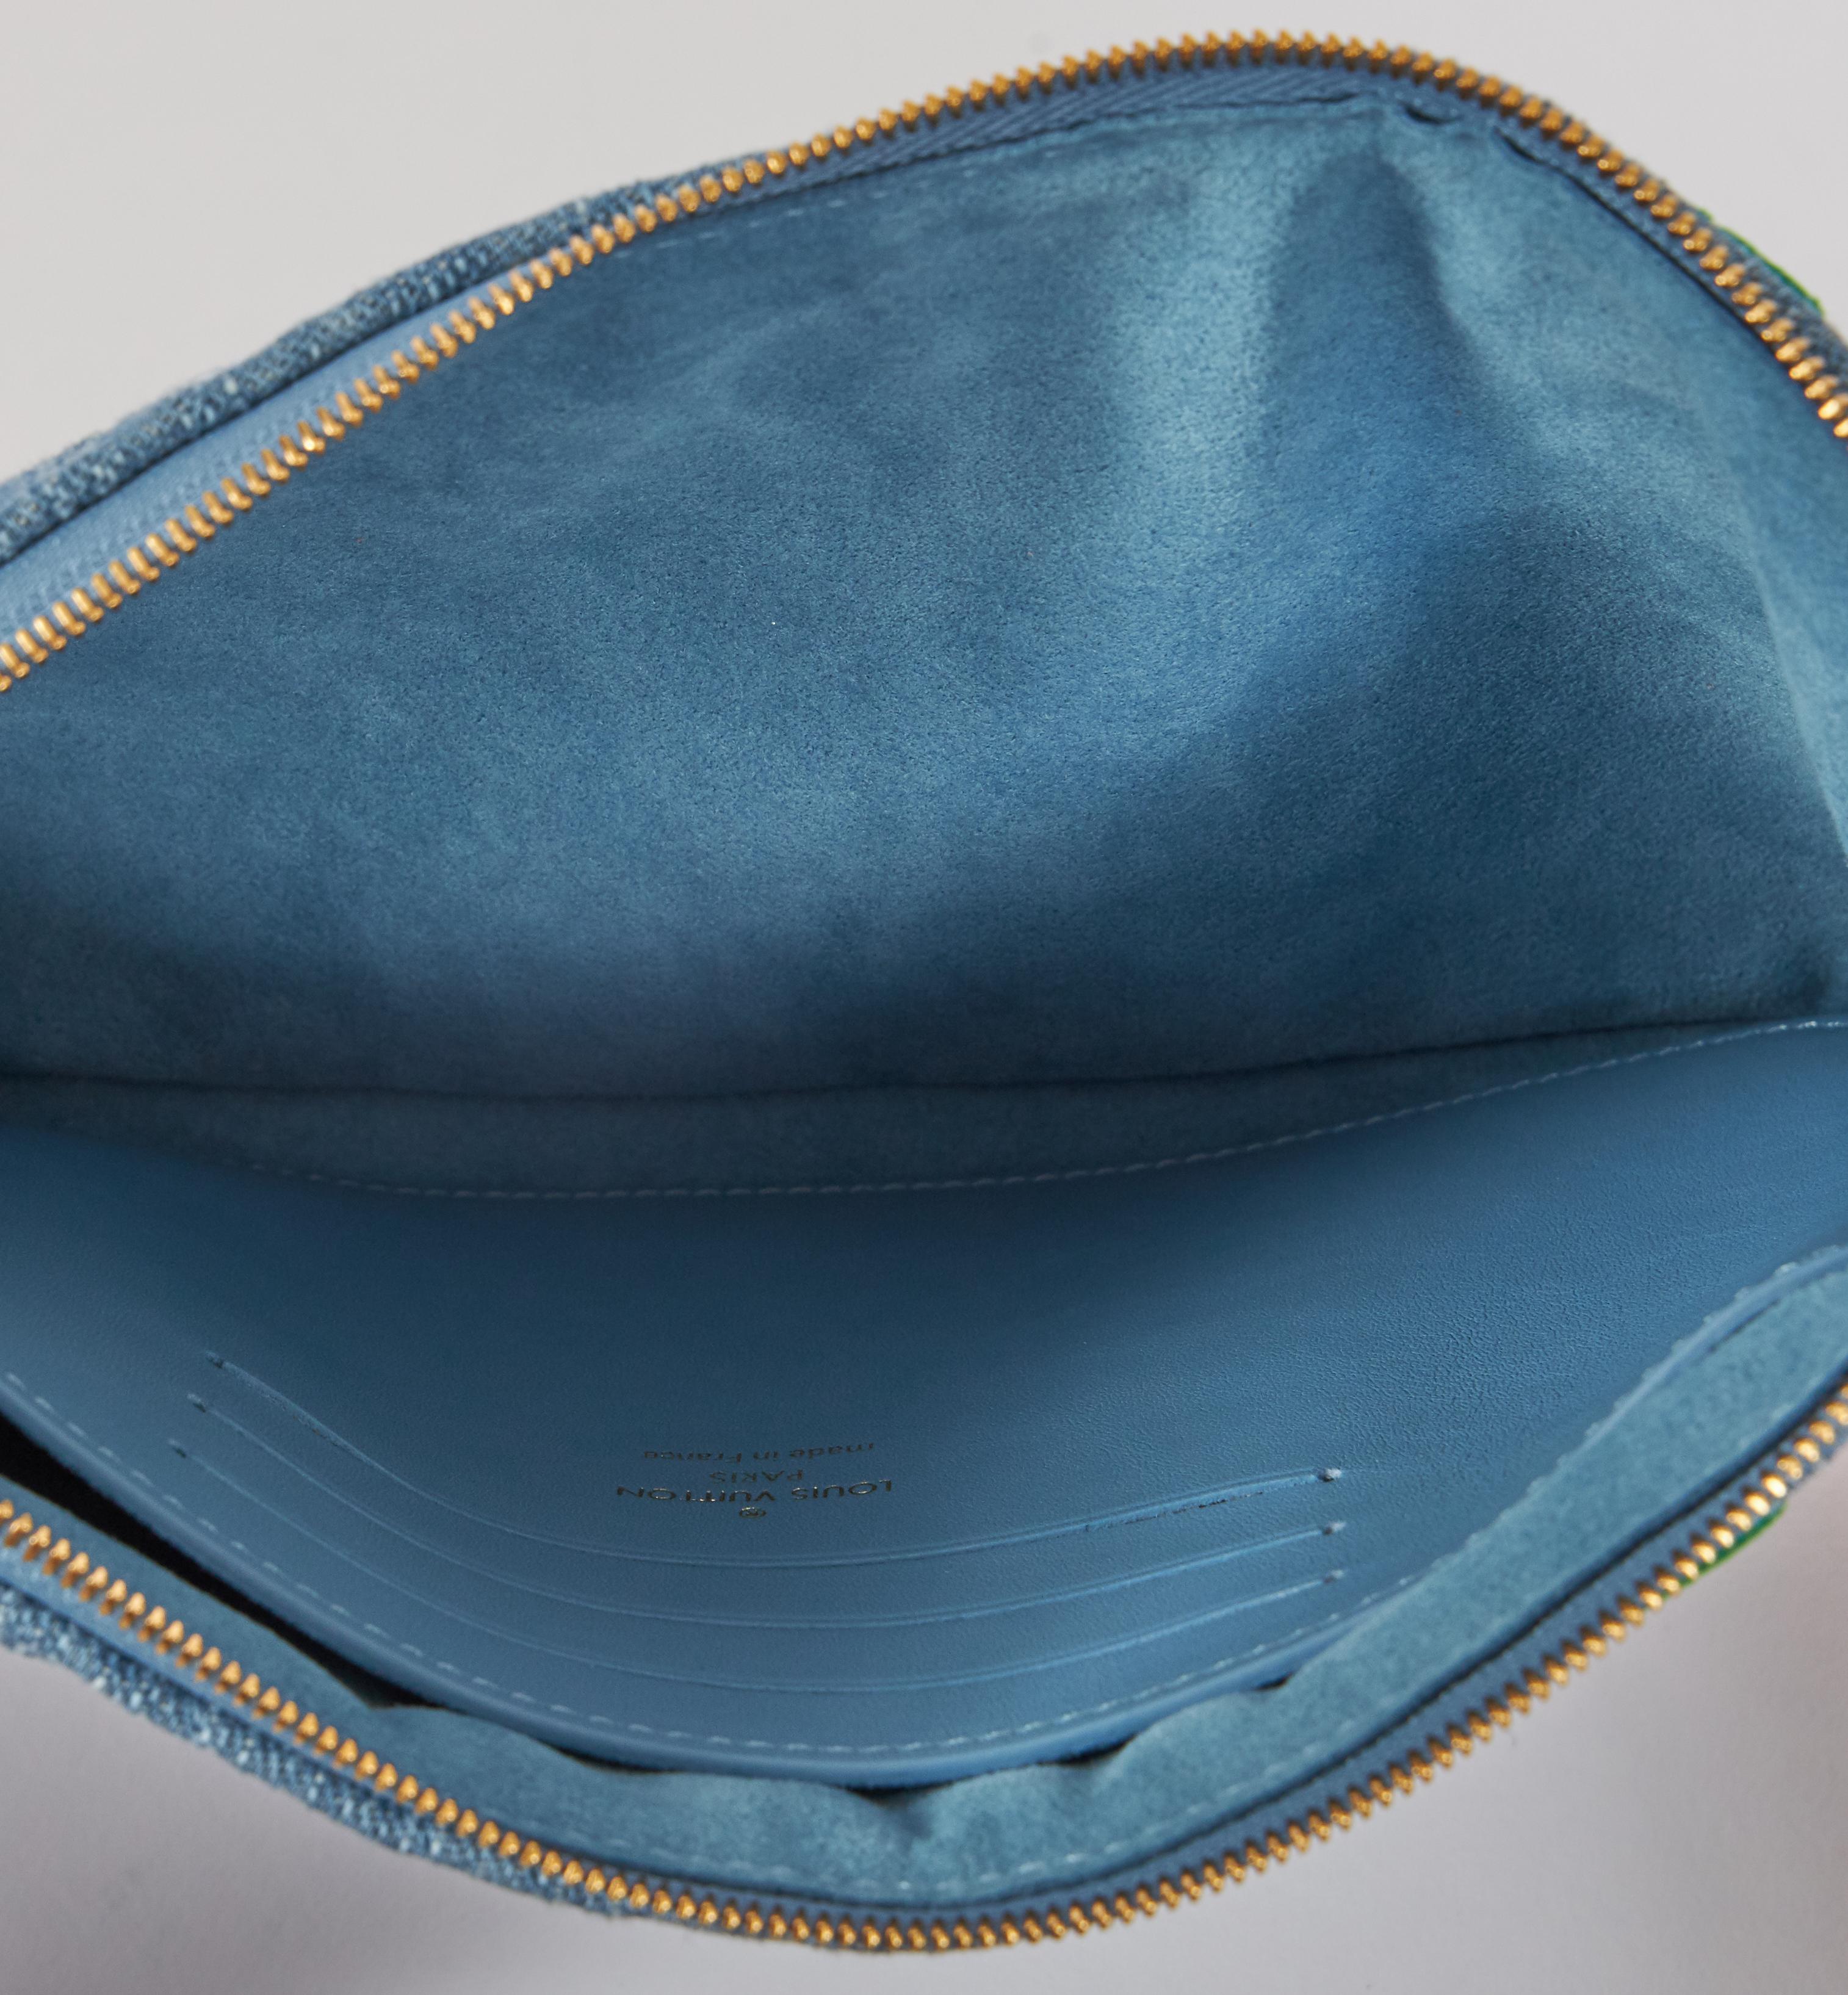 New Louis Vuitton Denim Multicolor Logo Pouchette Bag with Box 1